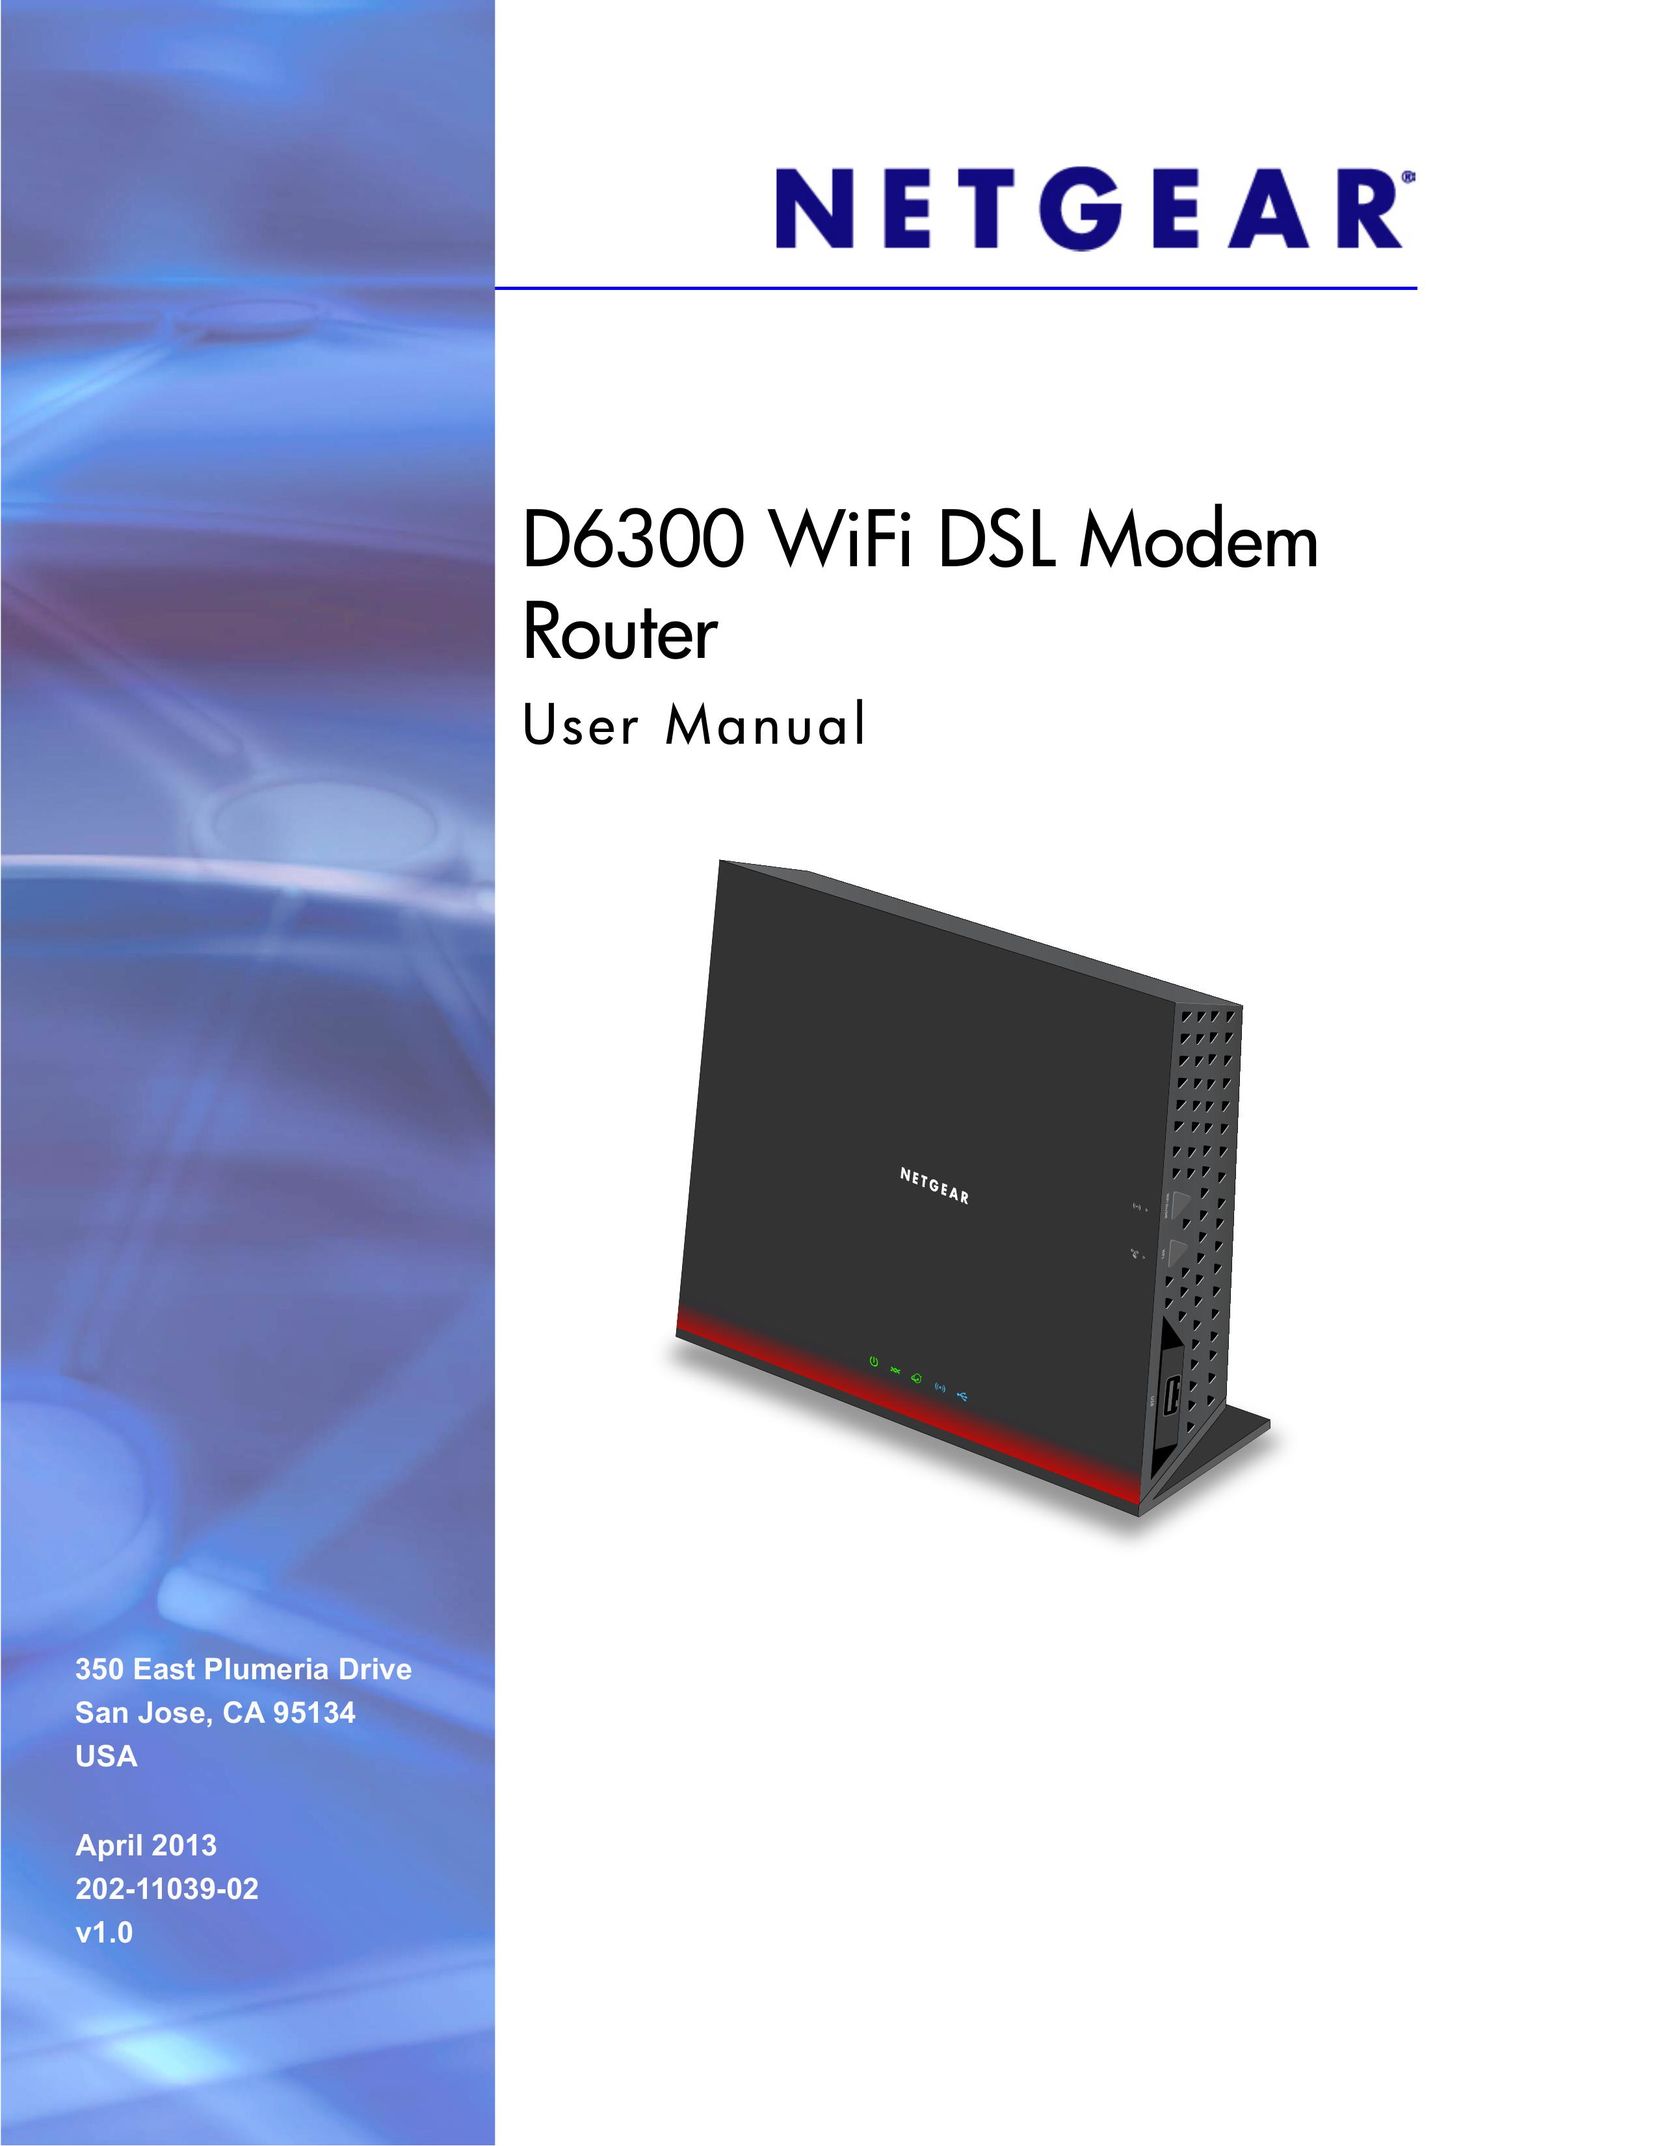 NETGEAR D6300 Network Router User Manual